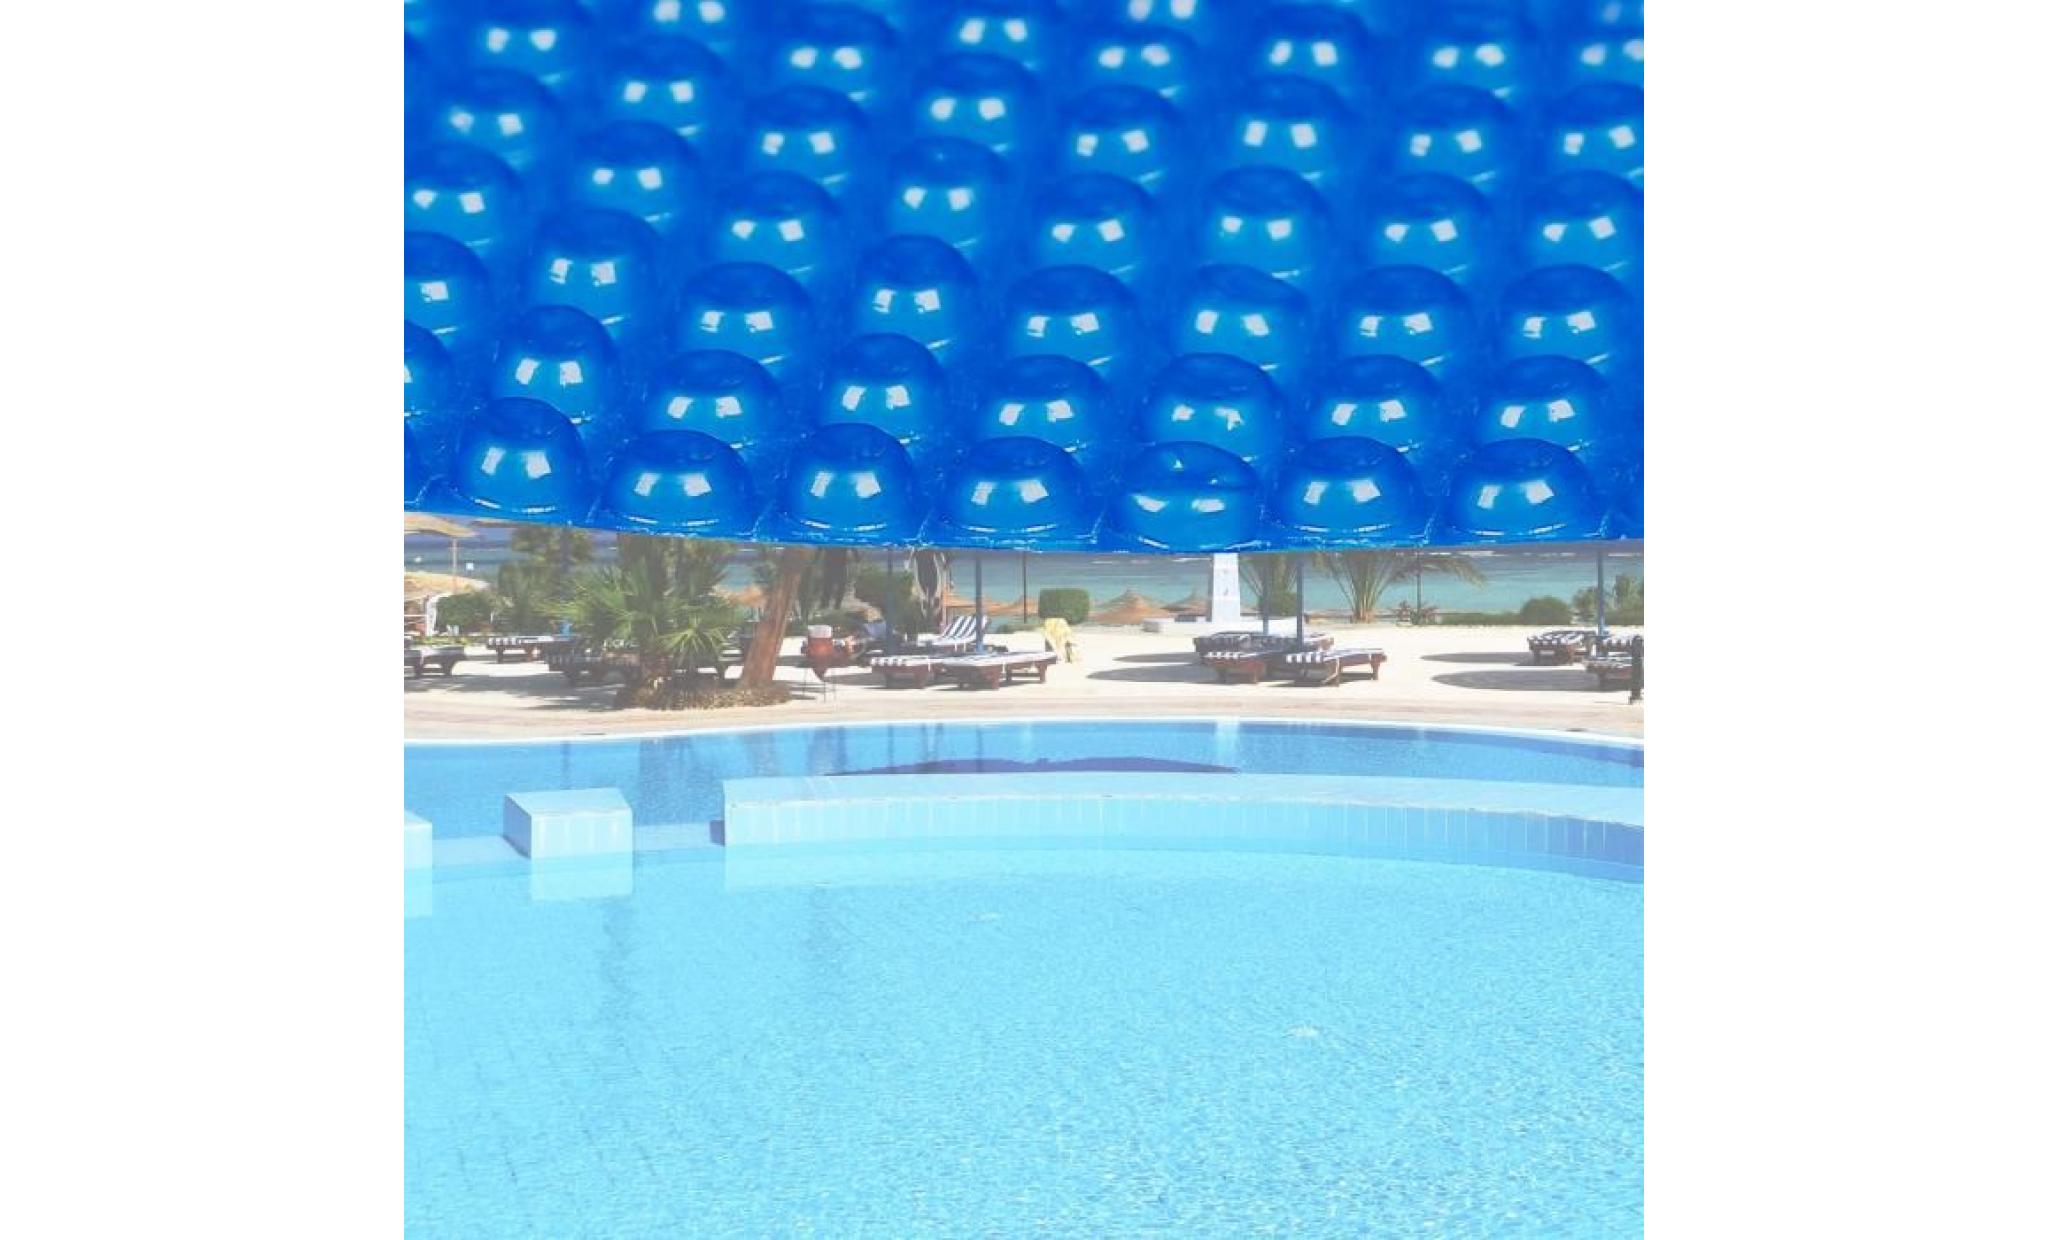 bâche solaire à bulles pour piscine ronde Ø 3.6m bleue protection couverture chauffage de piscine   60244